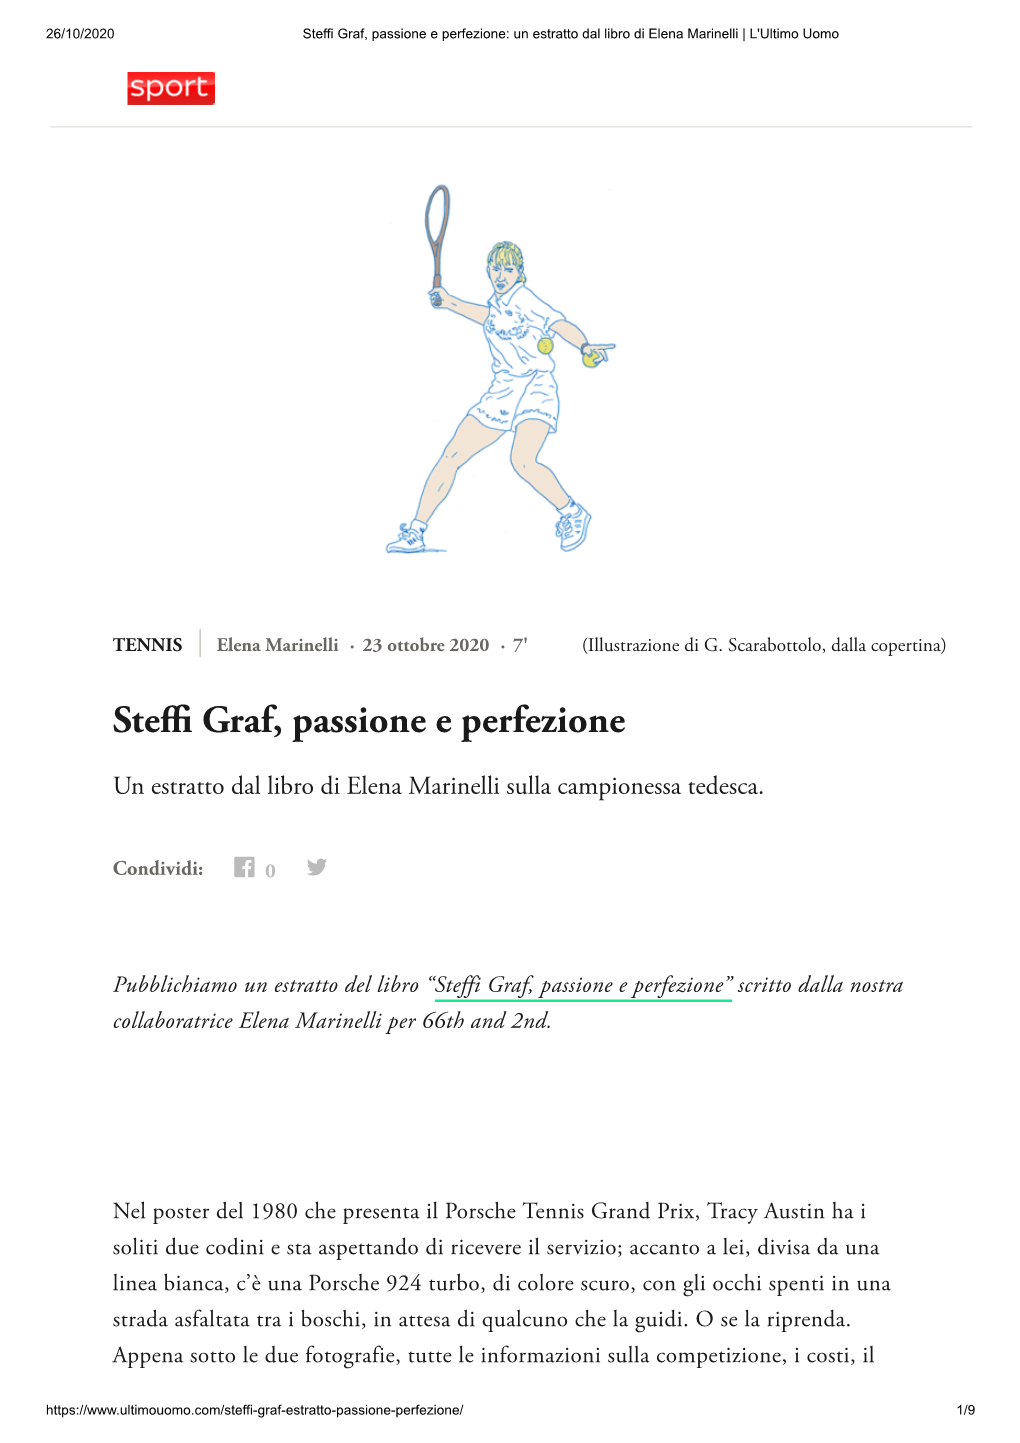 Steffi Graf, Passione E Perfezione: Un Estratto Dal Libro Di Elena Marinelli | L'ultimo Uomo